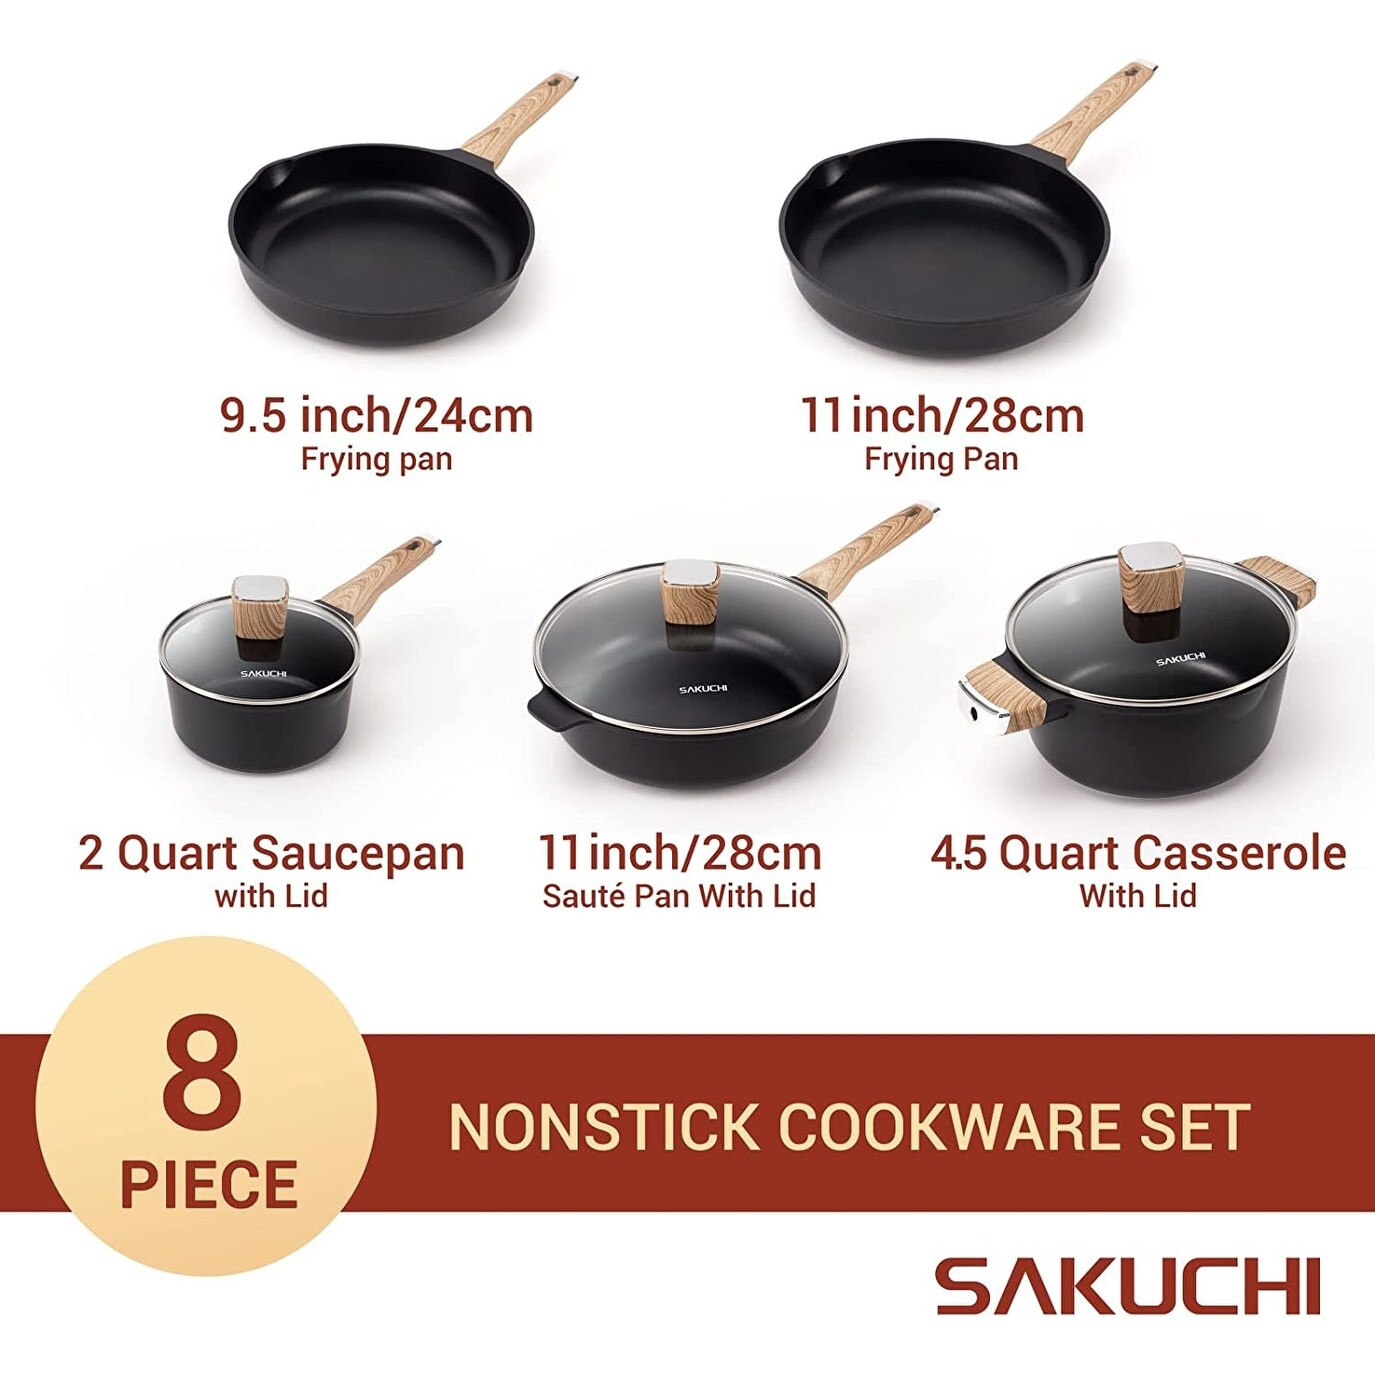 SAKUCHI 25 Piece Pot & Pan Set, Nonstick Granite Coating with Utensils